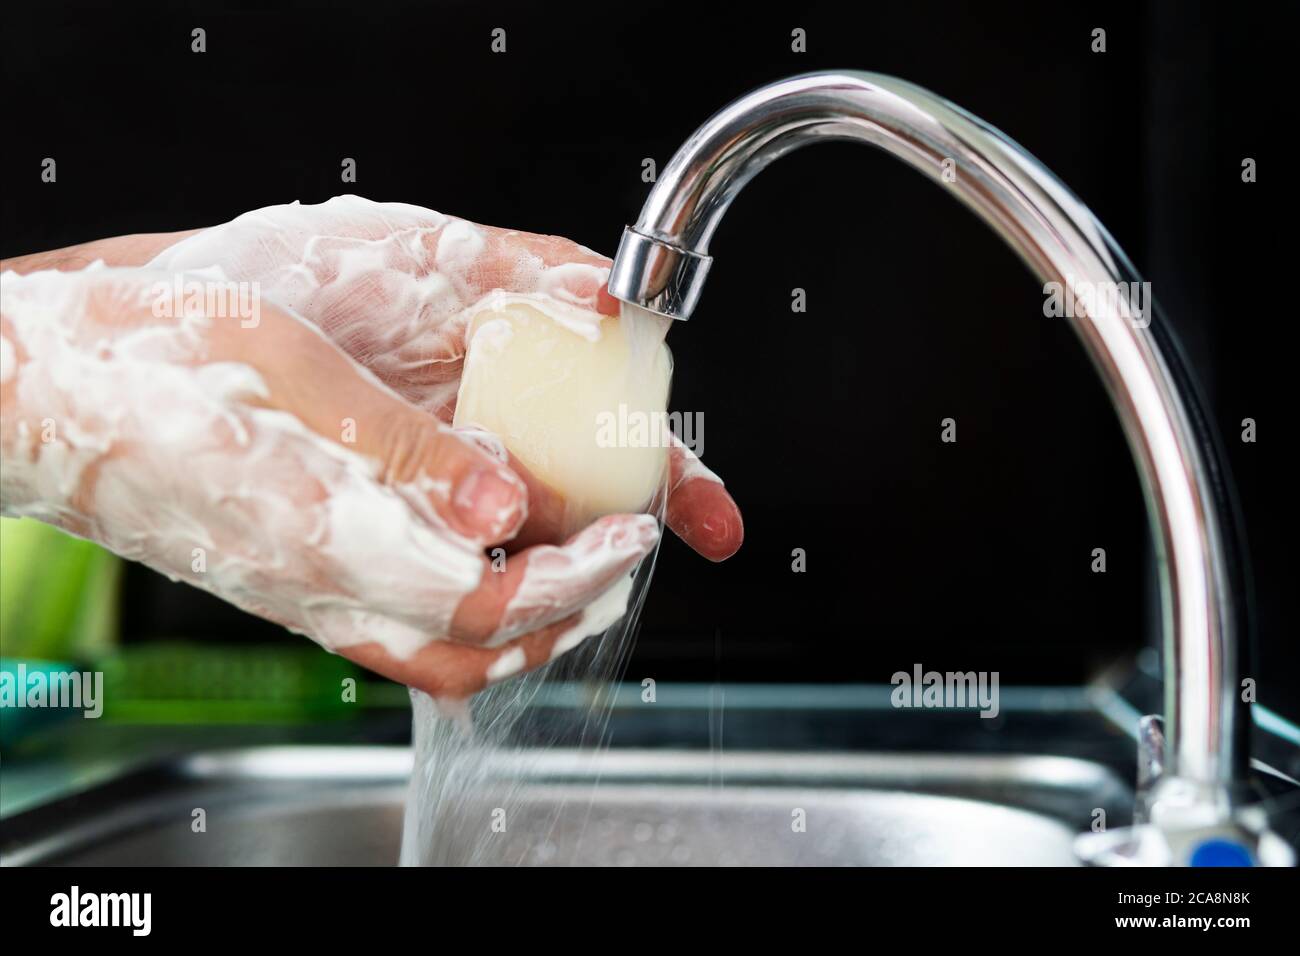 Waschen von Händen Reiben mit Seife Mann für die Winter-Grippe-Virus-Prävention, Hygiene zu stoppen Verbreitung von Keimen. Mann wäscht seine Hände mit Seife auf schwarz Stockfoto